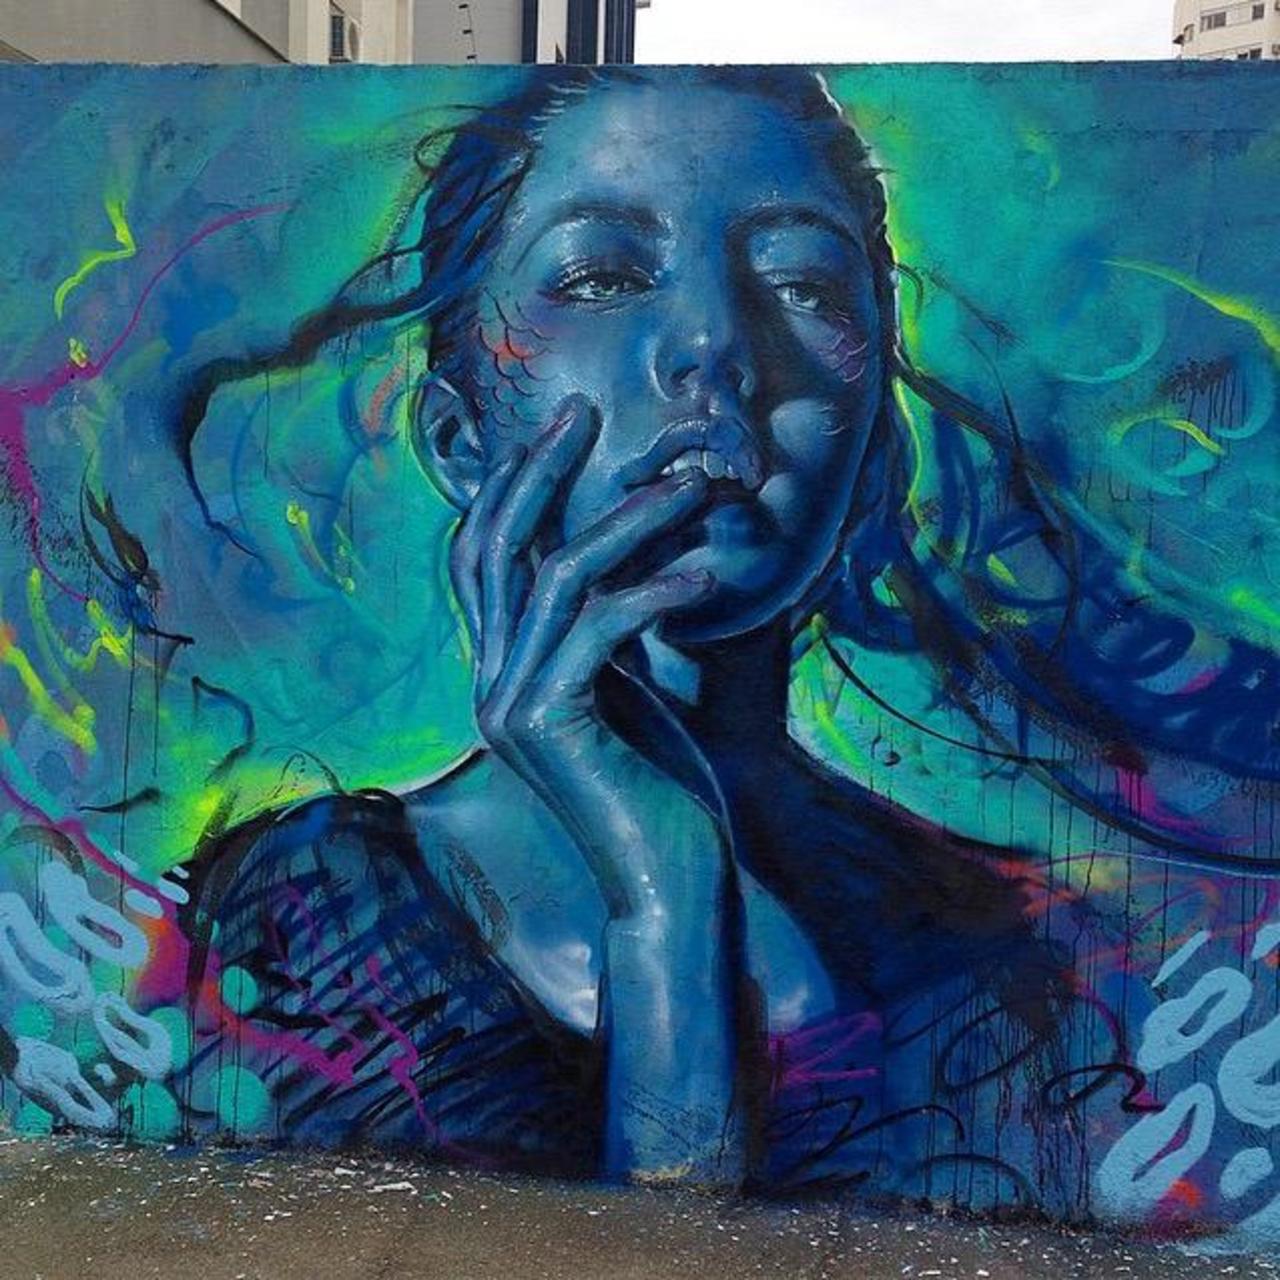 Thiago Valdi new Street Art piece titled 'Day Dreamer'

#art #mural #graffiti #streetart http://t.co/P1UnwVc44l